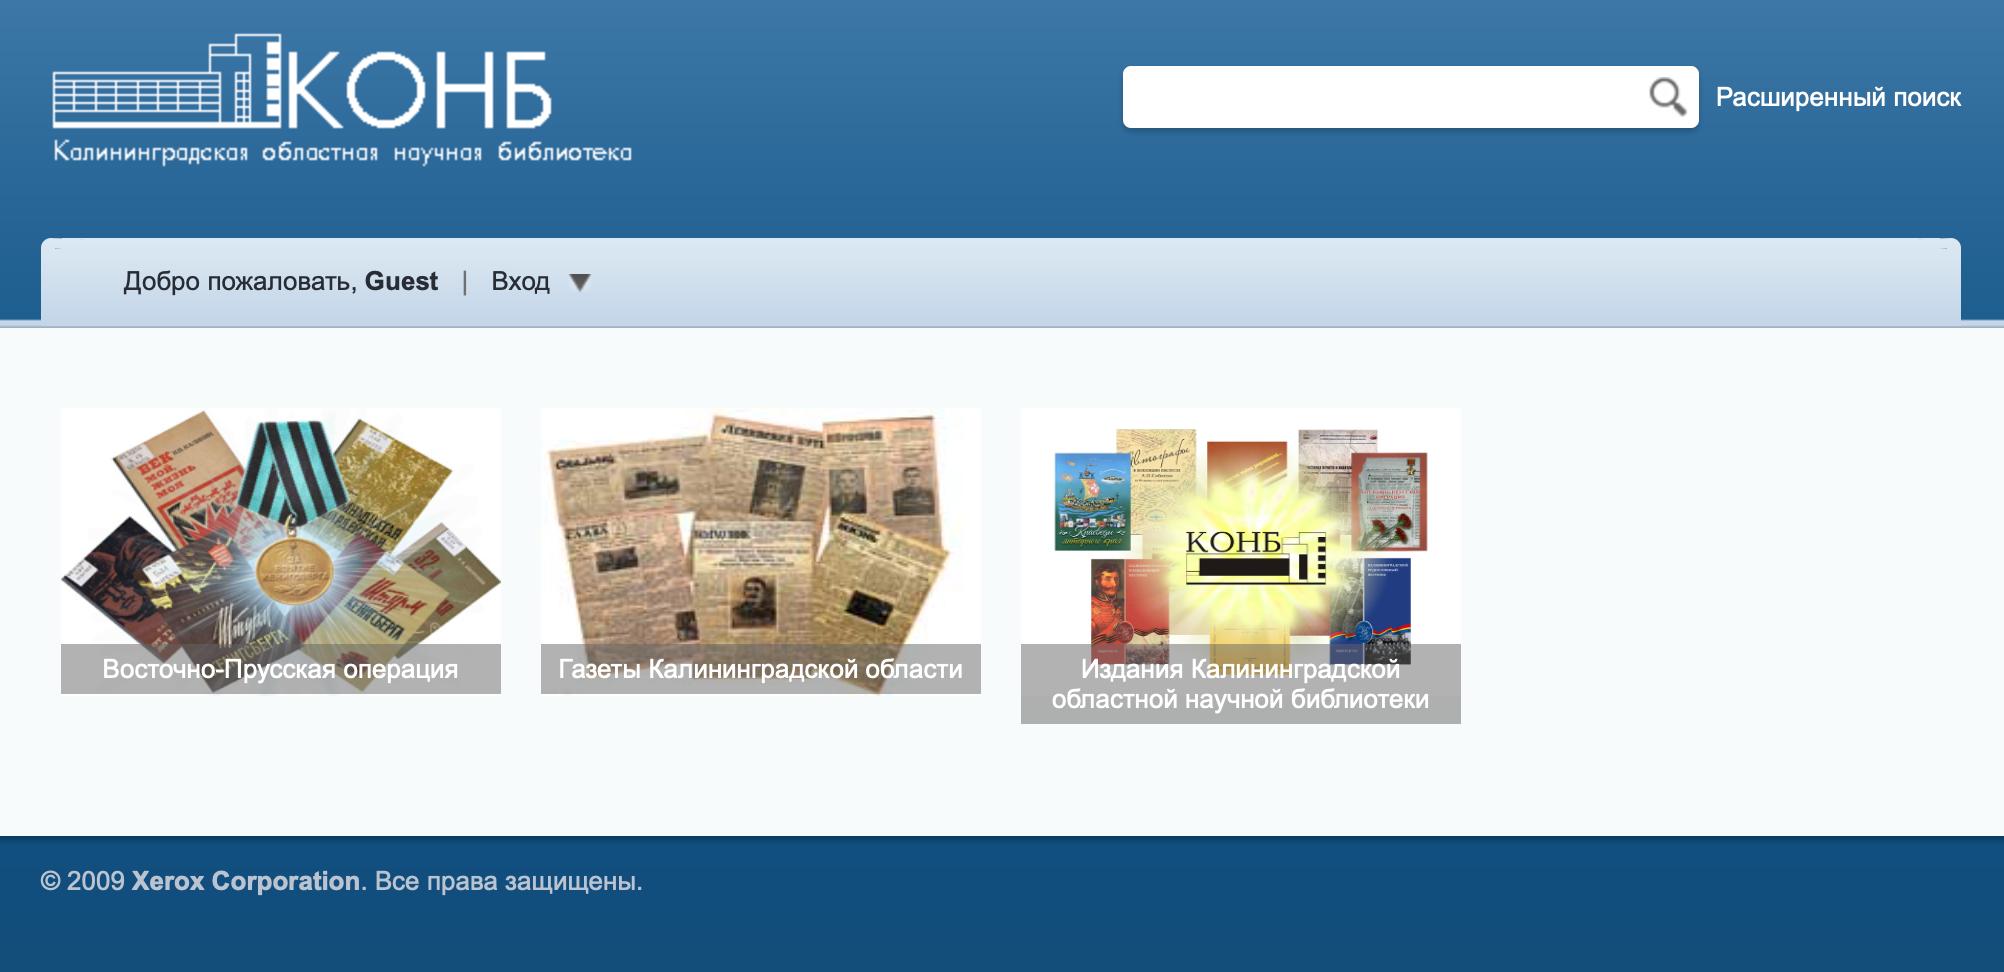 Сайт электронной библиотеки Калининграда. Скриншот © Калининградская областная научная библиотека